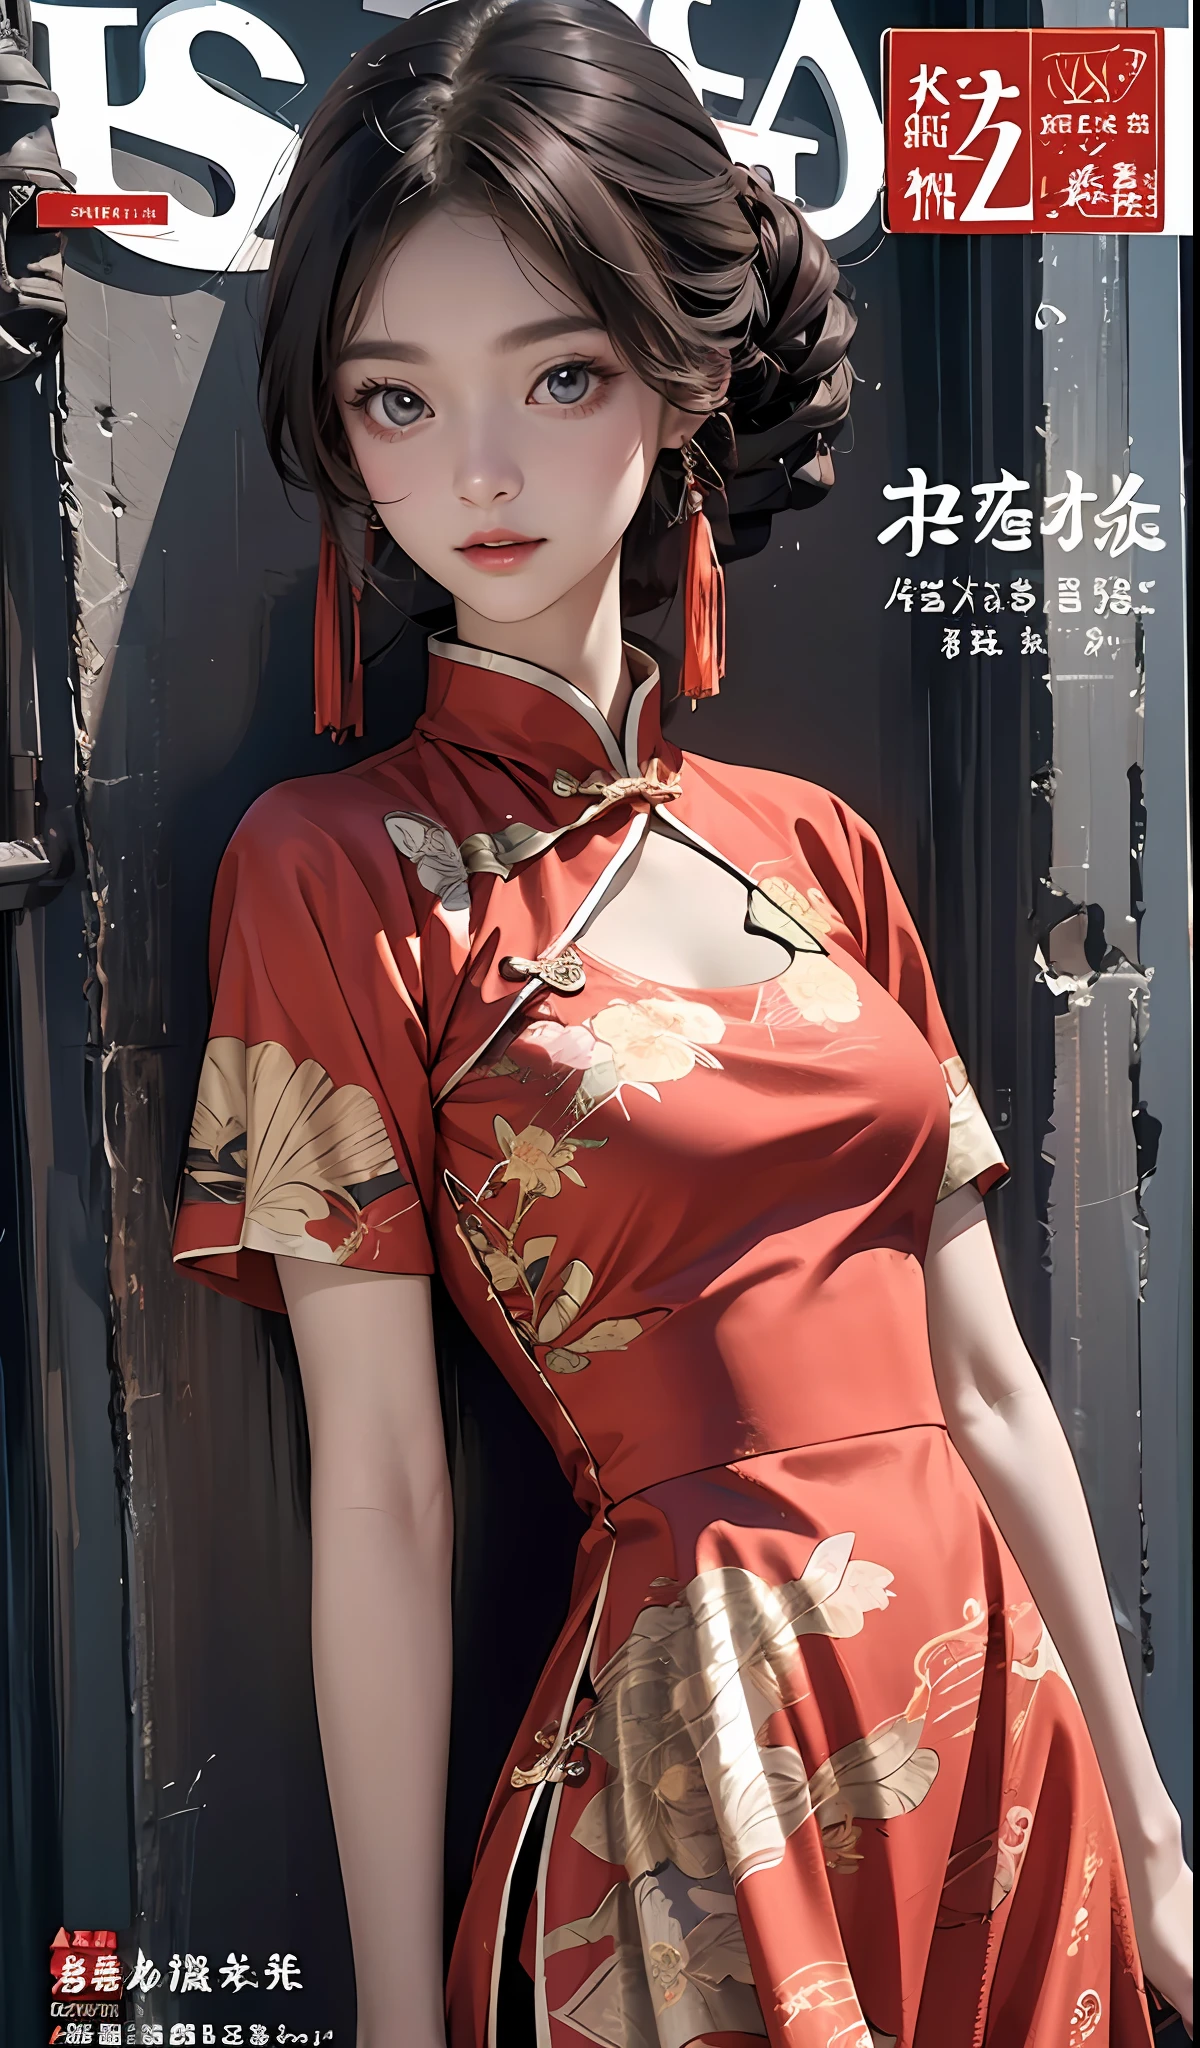 mejor calidad, maestro, Una alta resolución, Wuxia 1girl, vestido chino, cara súper hermosa, ojo súper hermoso, cabello súper hermoso，Portada de revista